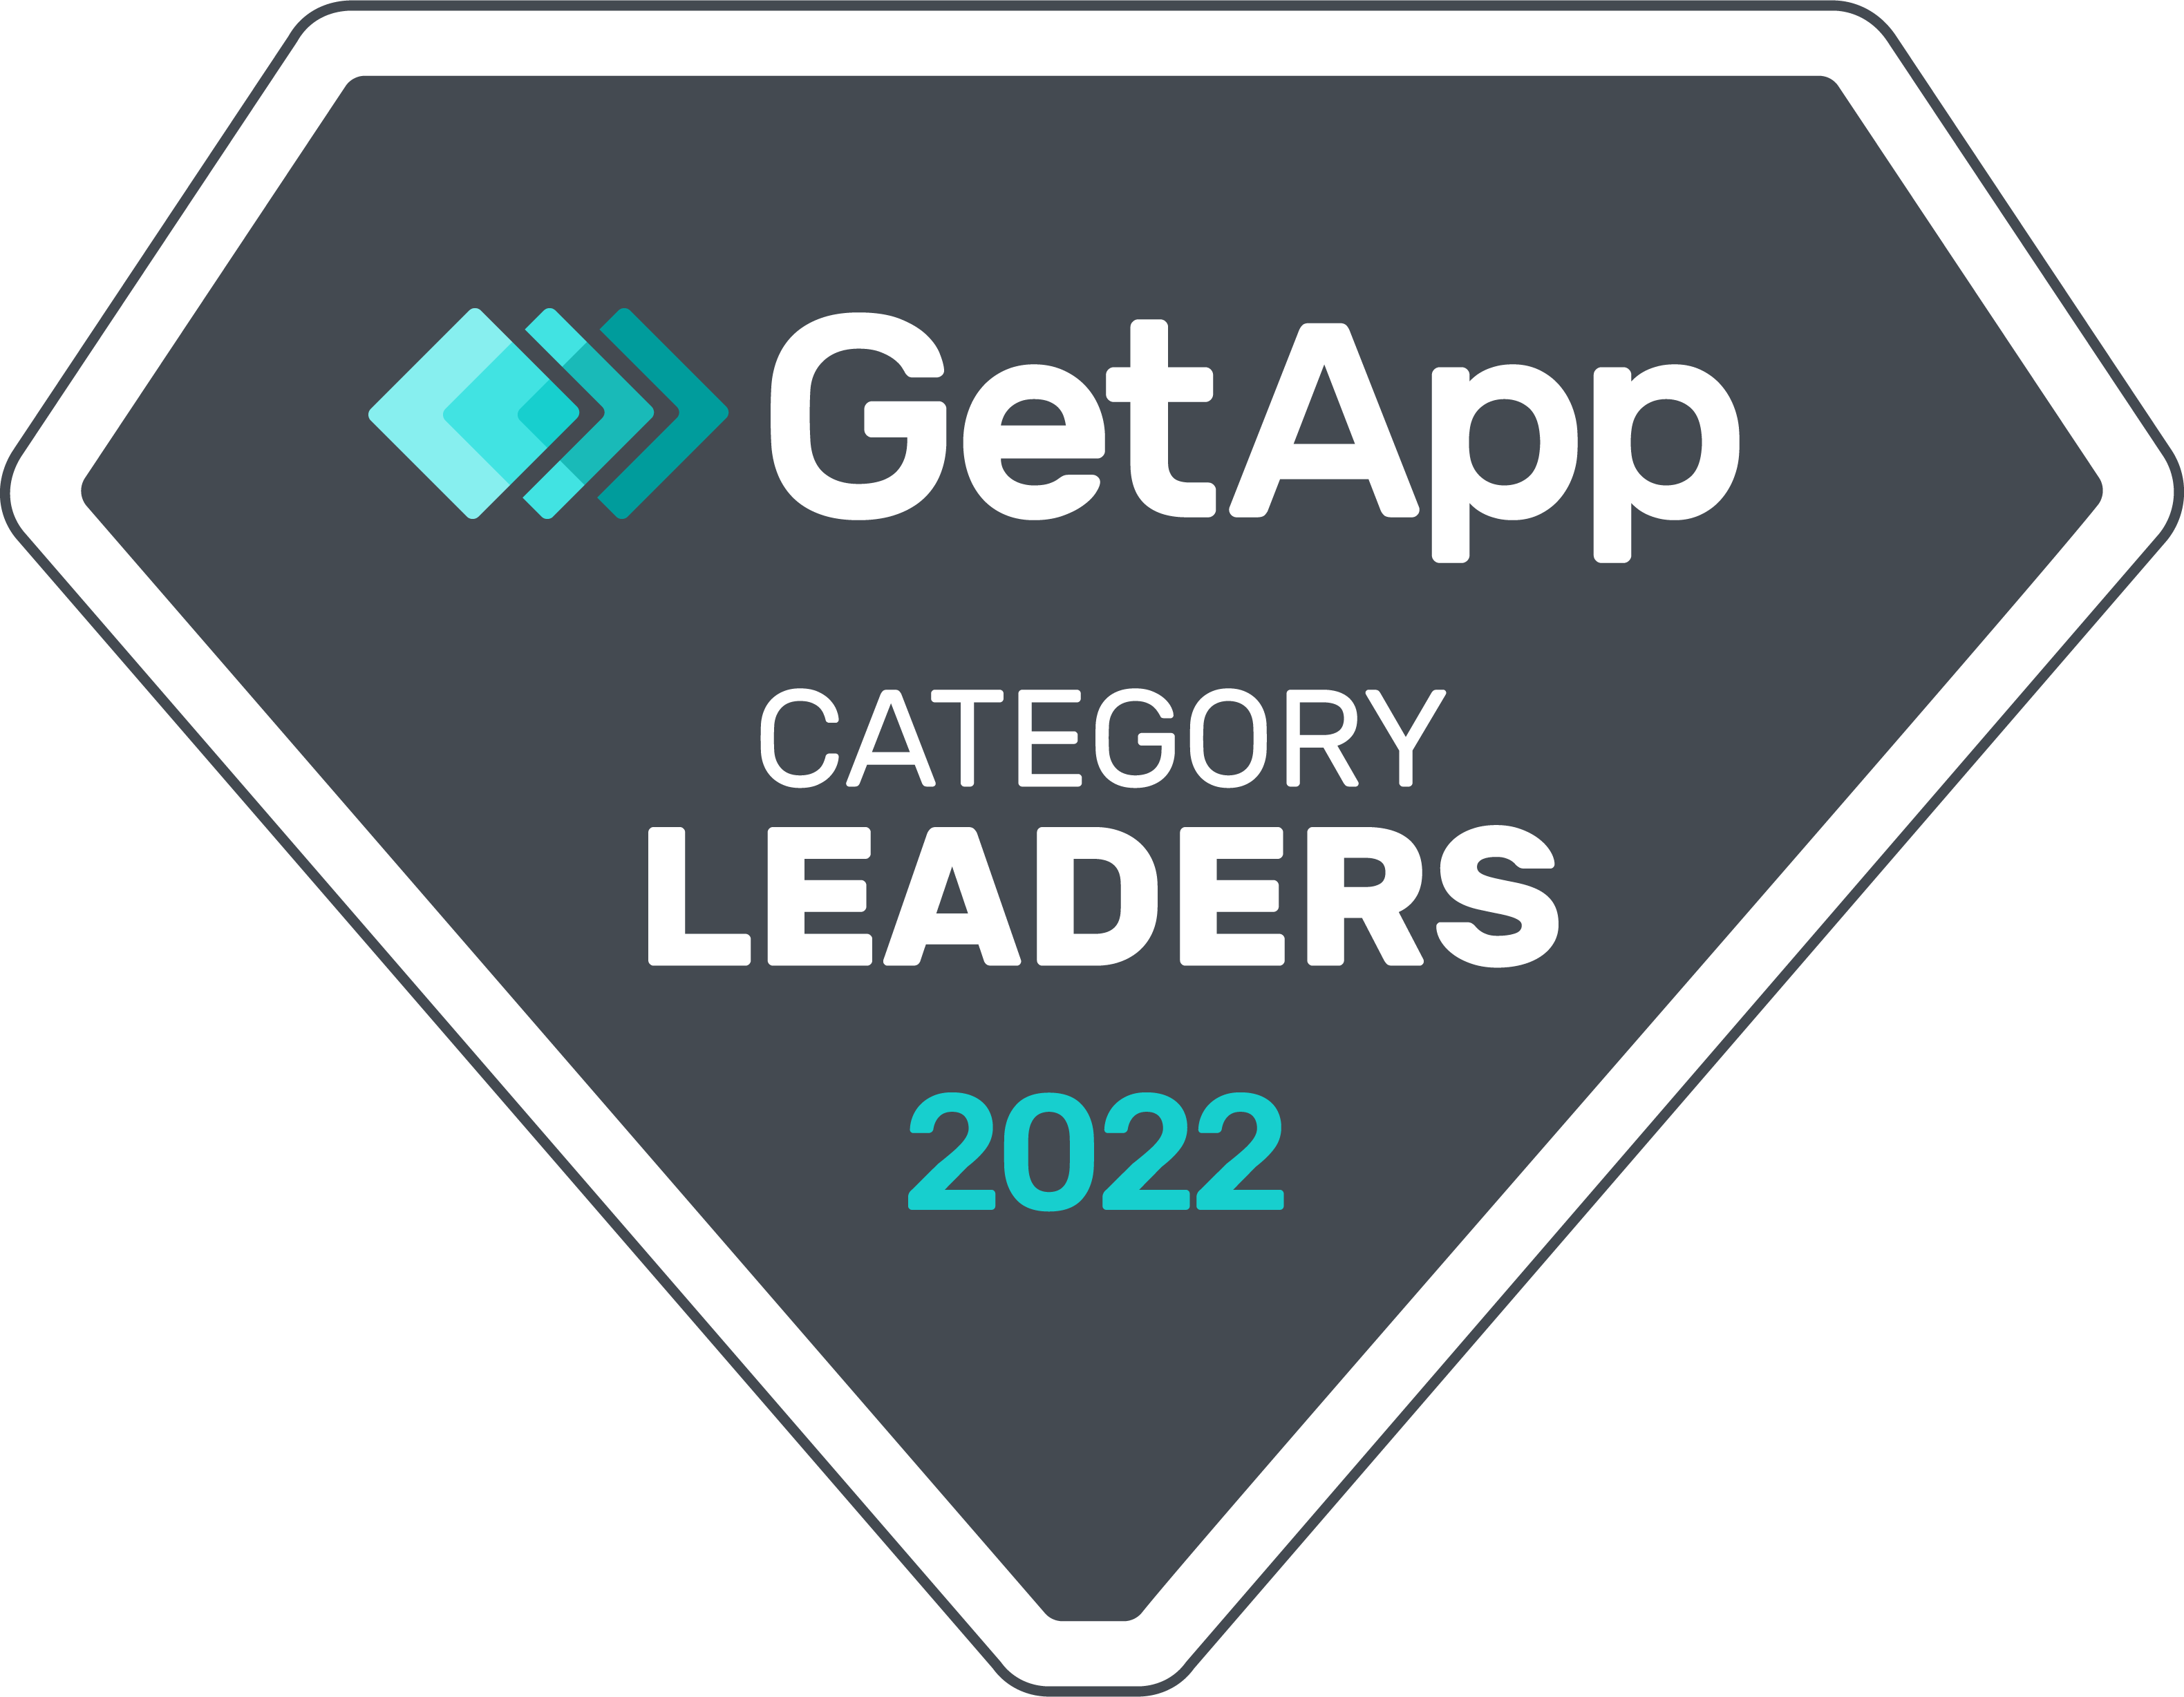 GetApp Leaders 2022